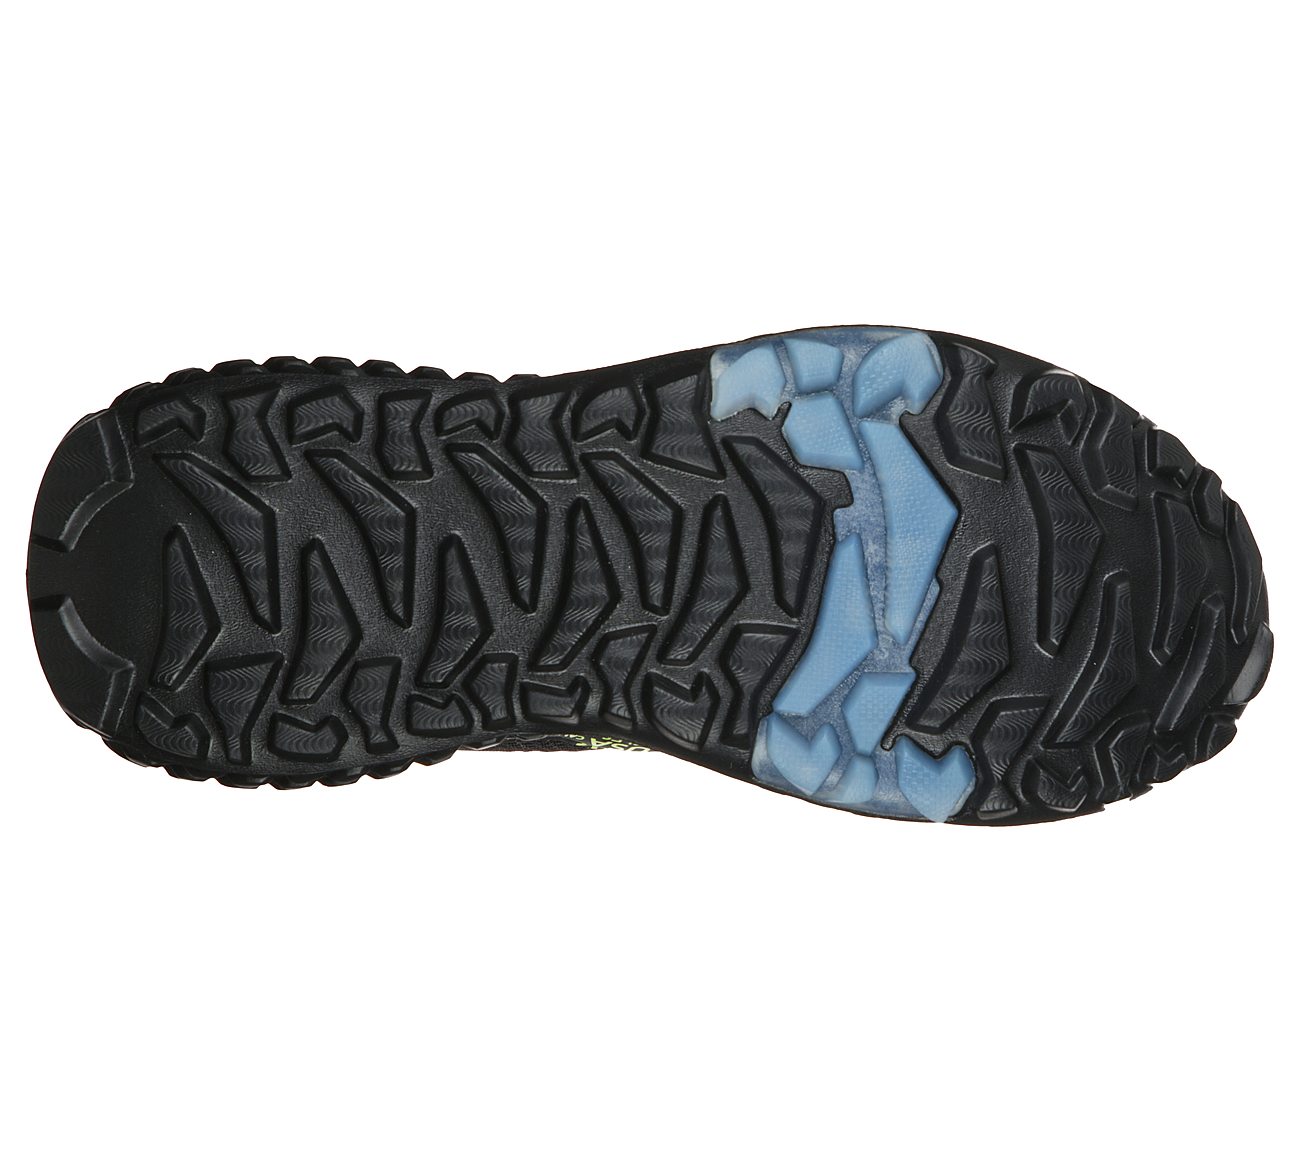 SKECHERS MONSTER - MASHTON, BLACK/LIME Footwear Bottom View